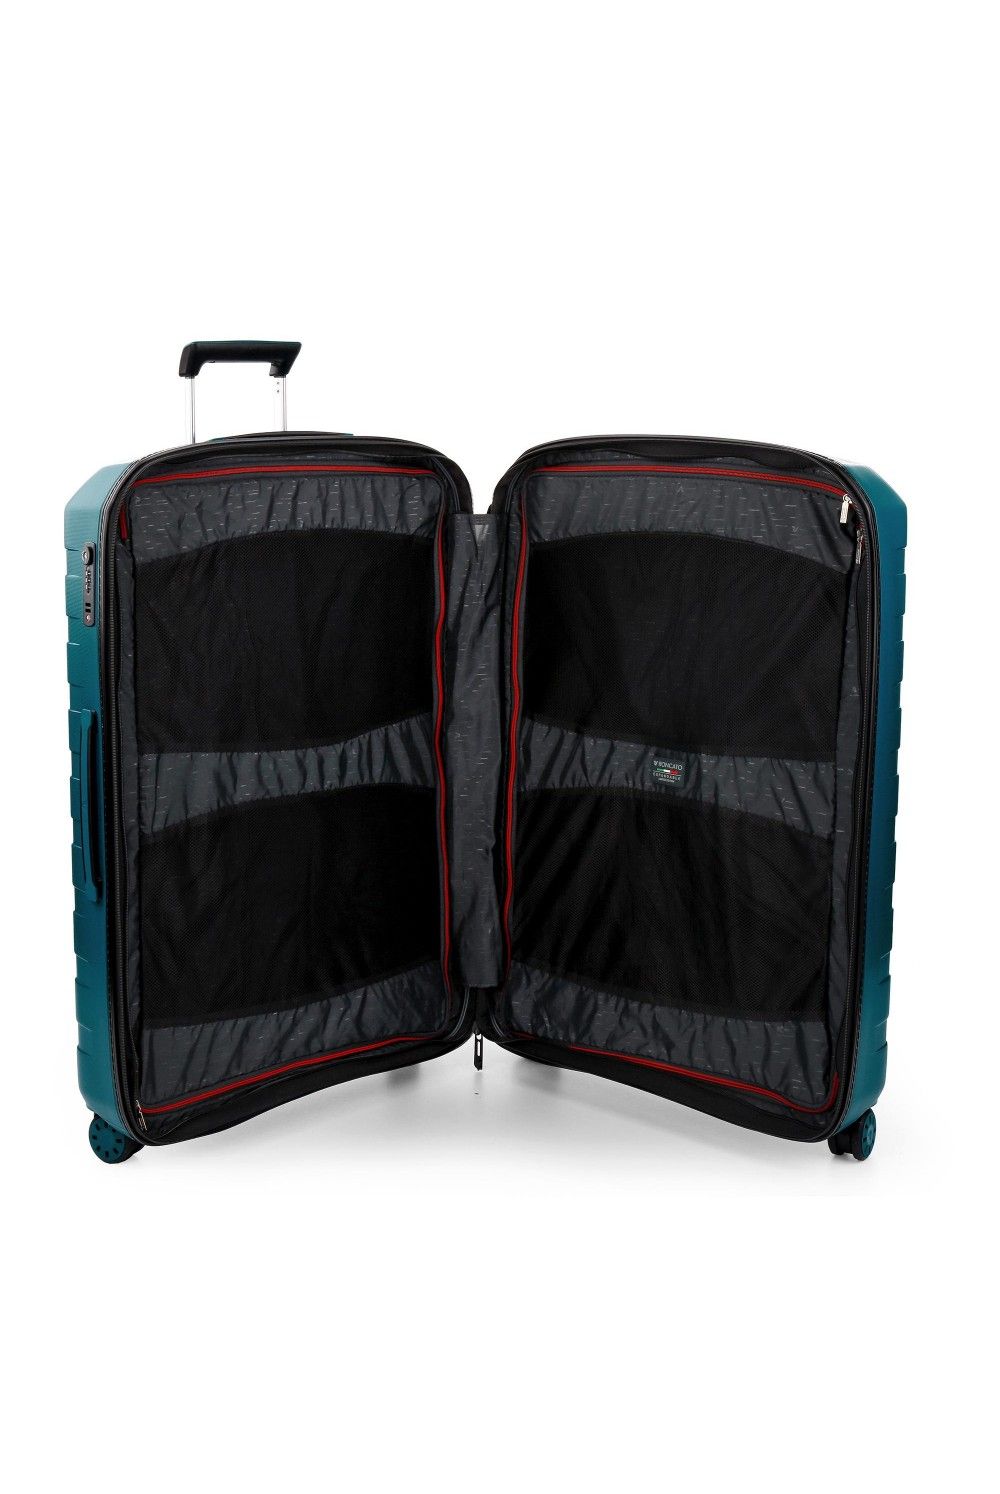 Suitcase Roncato Box 4 Large 78cm 4 wheel expandable